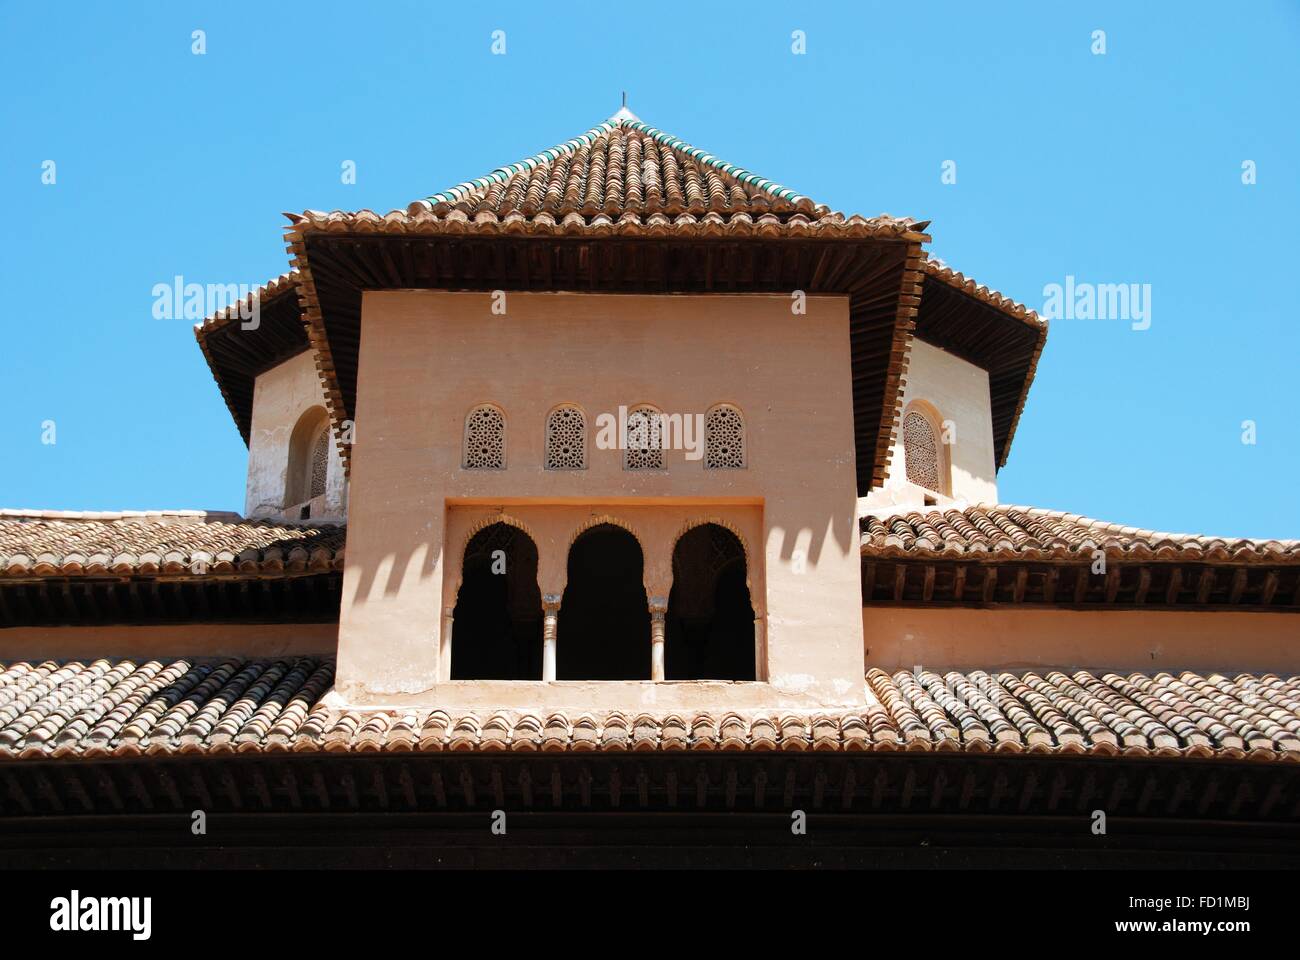 Toit de la Salas de los Reyes dans la Cour des Lions, le Palais de l'Alhambra, Grenade, Province de Grenade, Andalousie, espagne. Banque D'Images